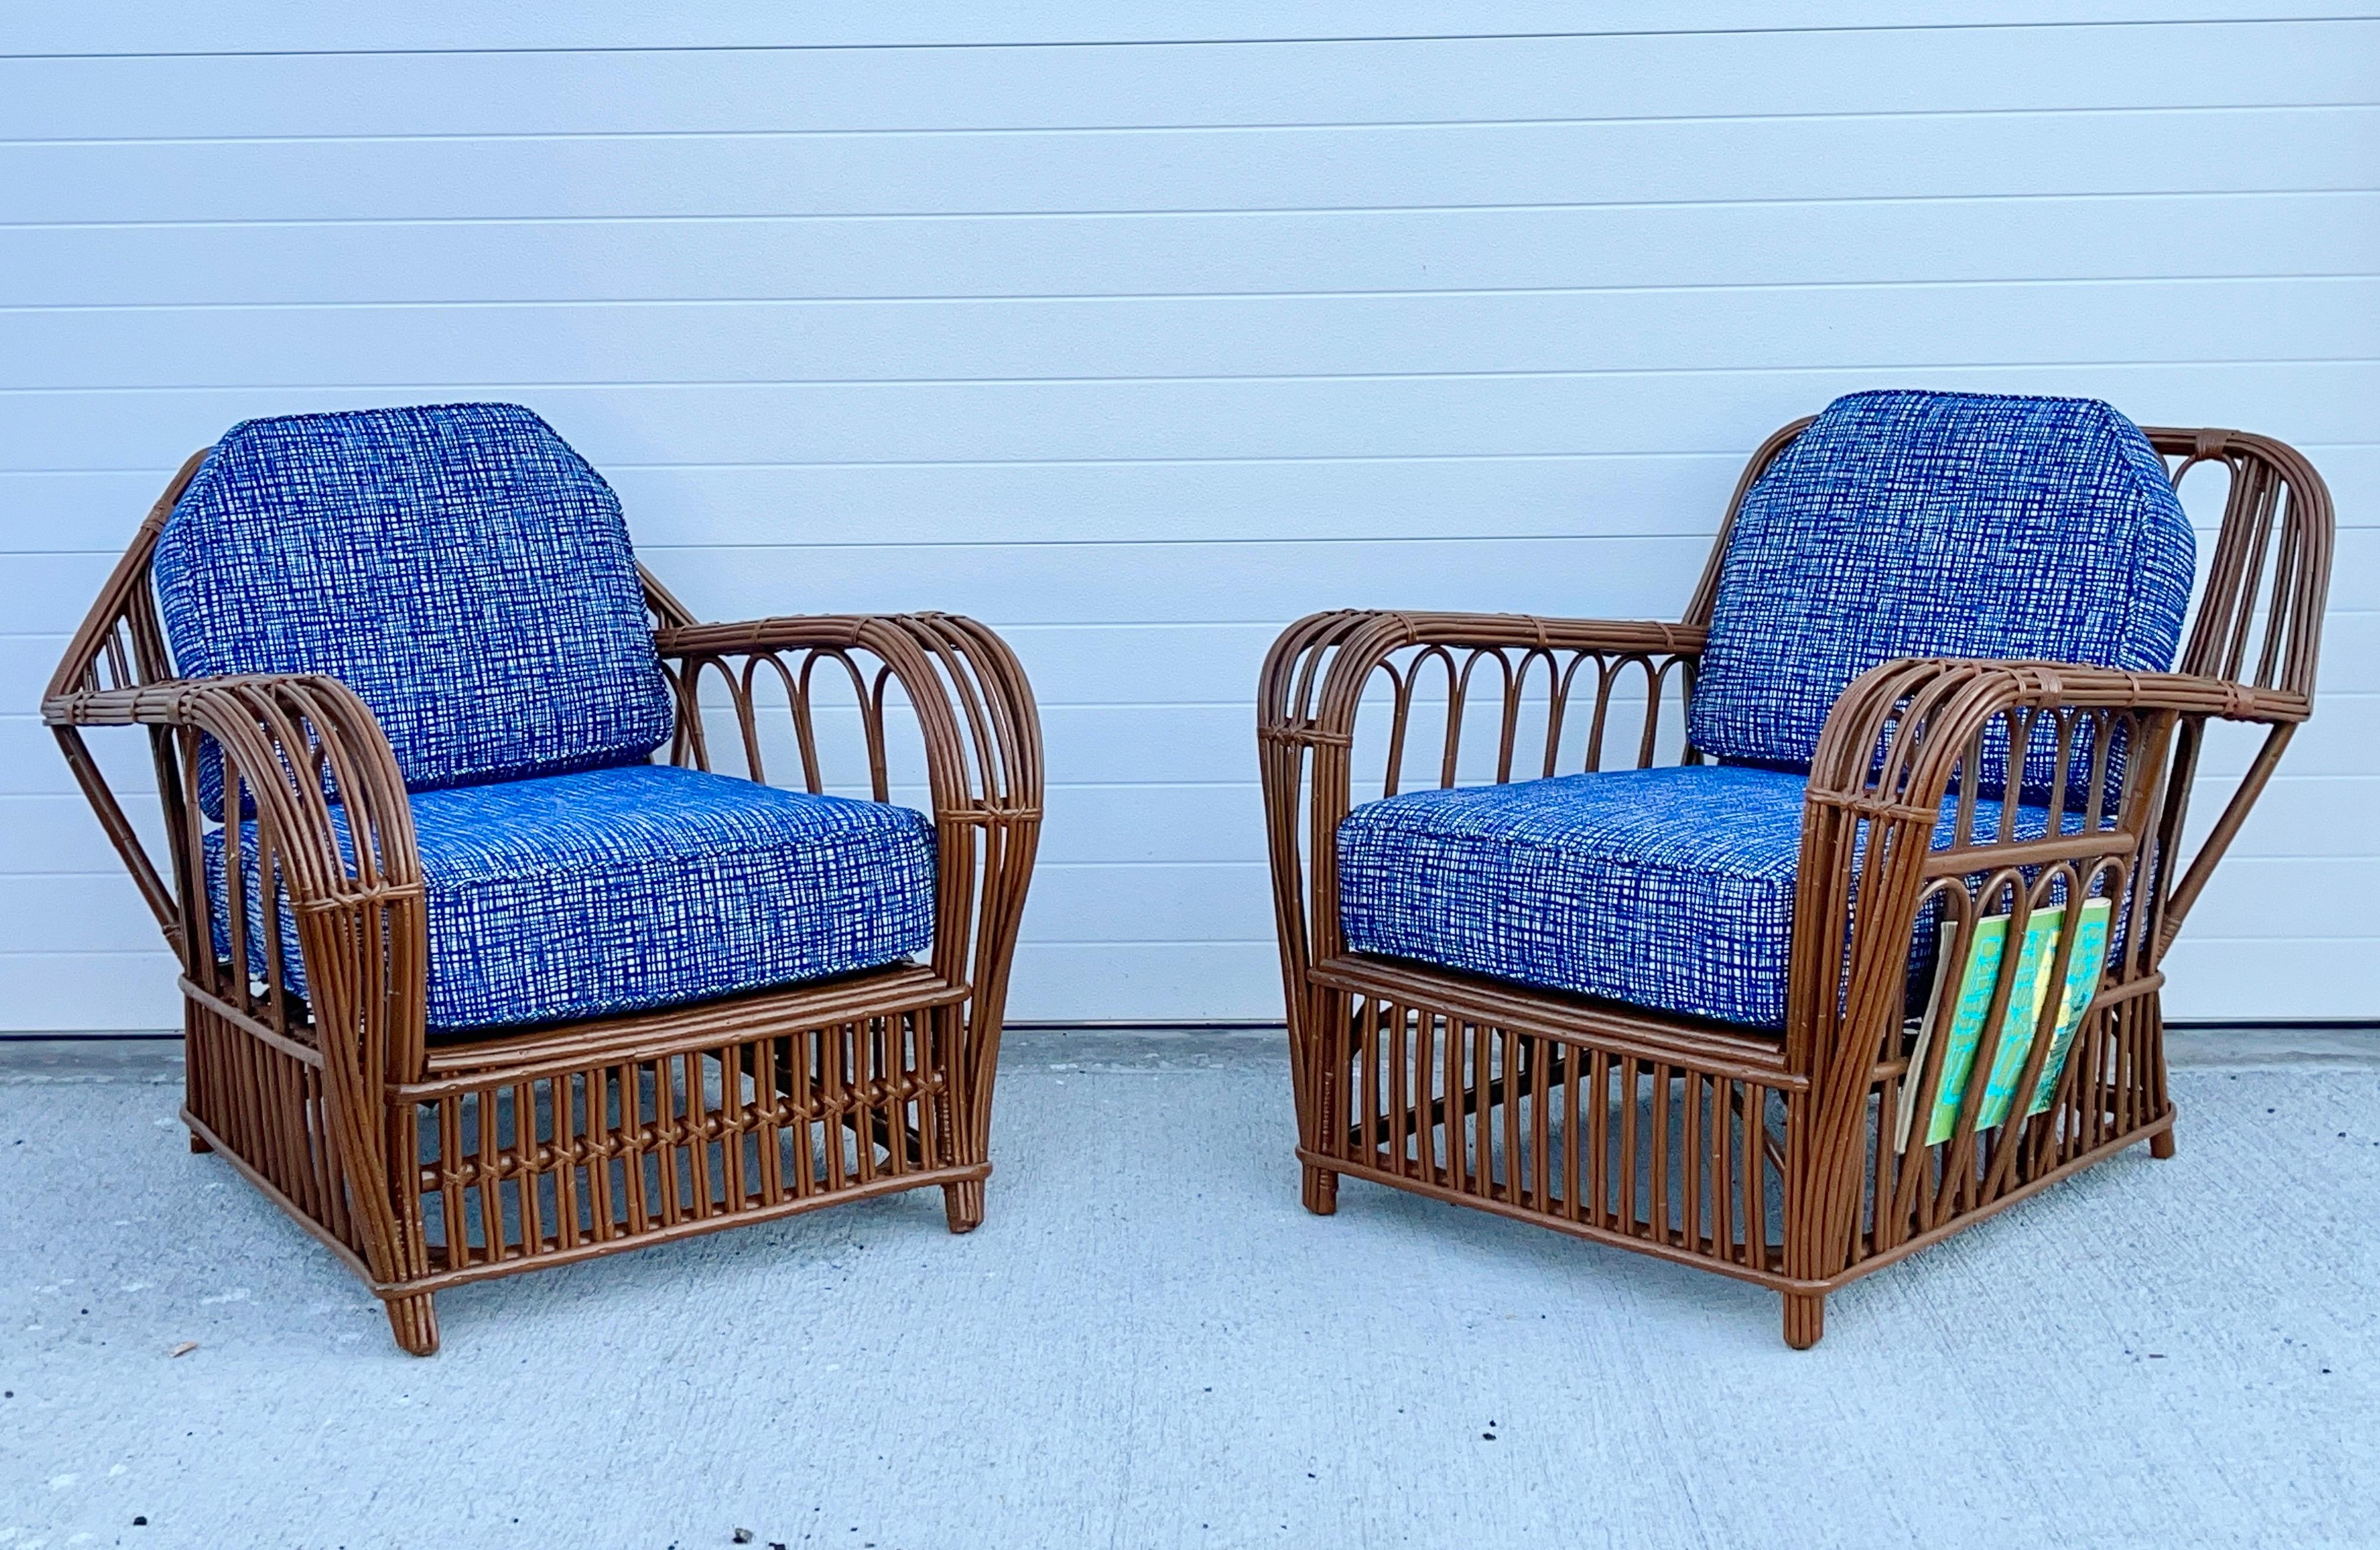 Ensemble de deux fauteuils en rotin de roseau art déco américain.  L'un d'entre eux est doté d'une pierre tombale.  Un avec un dos carré (rectangulaire) ; celui-ci a également une poche latérale pour les journaux et Country Life.
Tous deux ont été